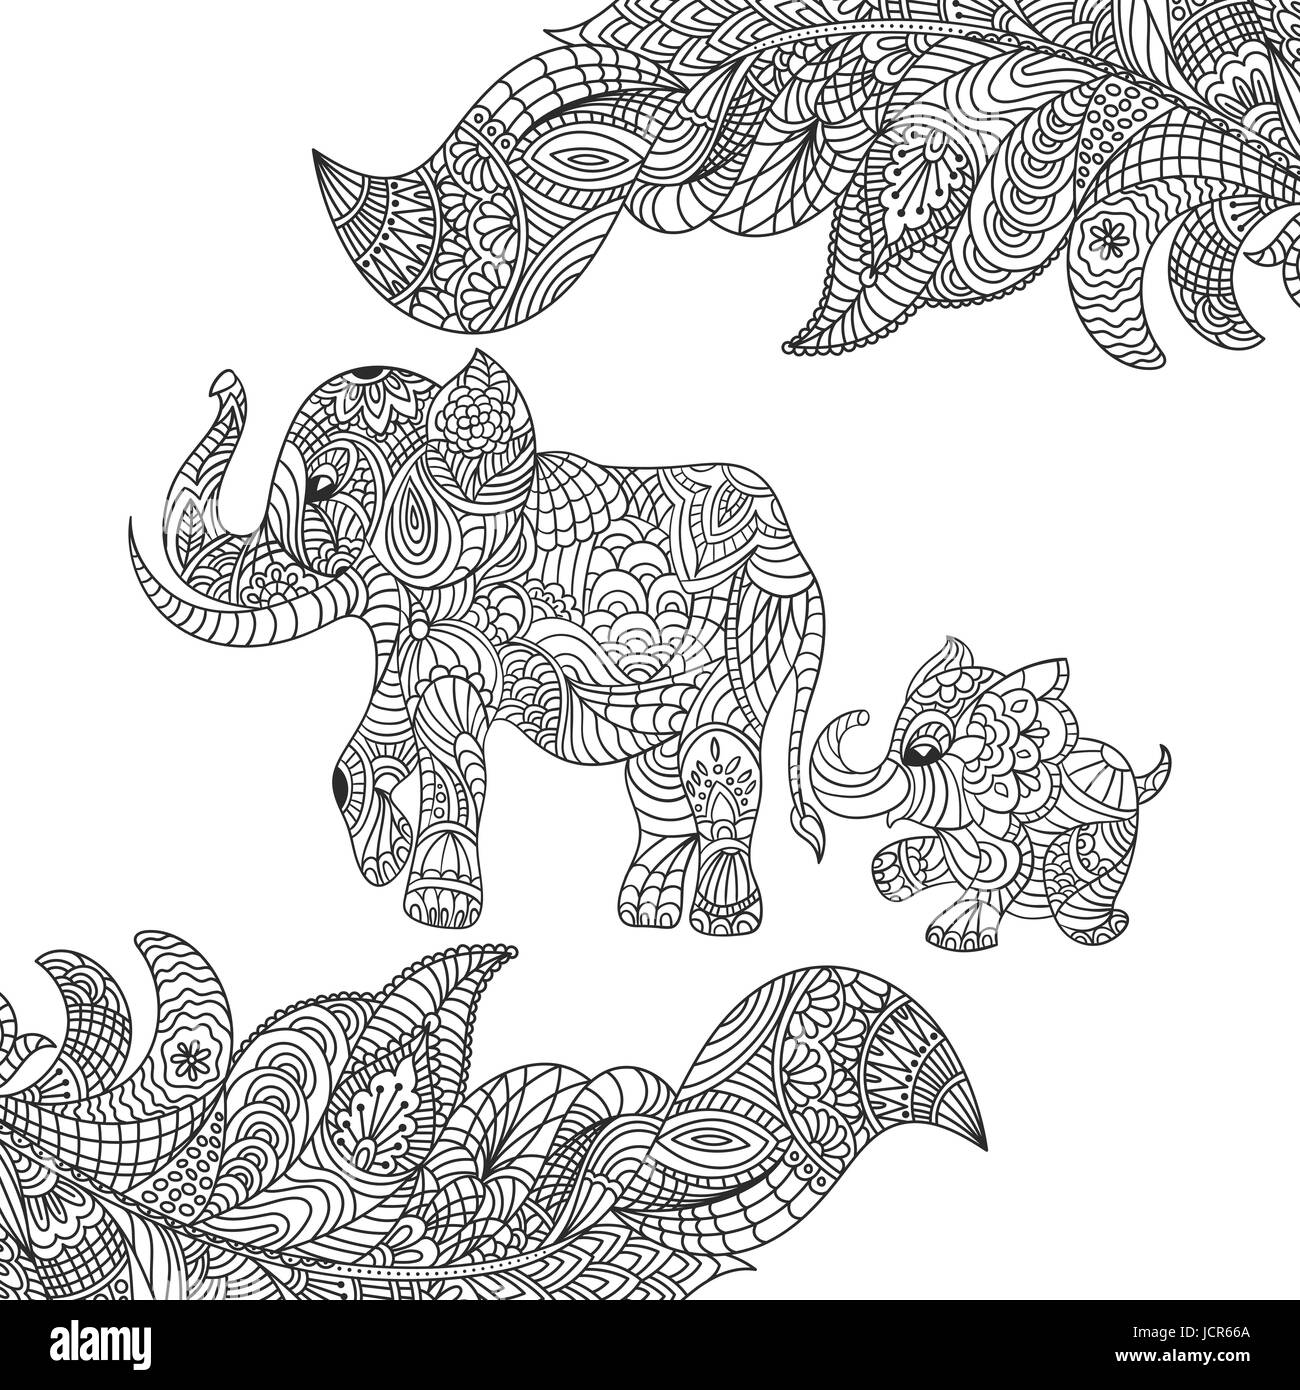 La Main Zentagle Monochrome Vector Illustration D Un Elephant Et Bebe Elephant Coloriage Avec Details Haute Isole Sur Fond Blanc Arriere Boutique Image Vectorielle Stock Alamy